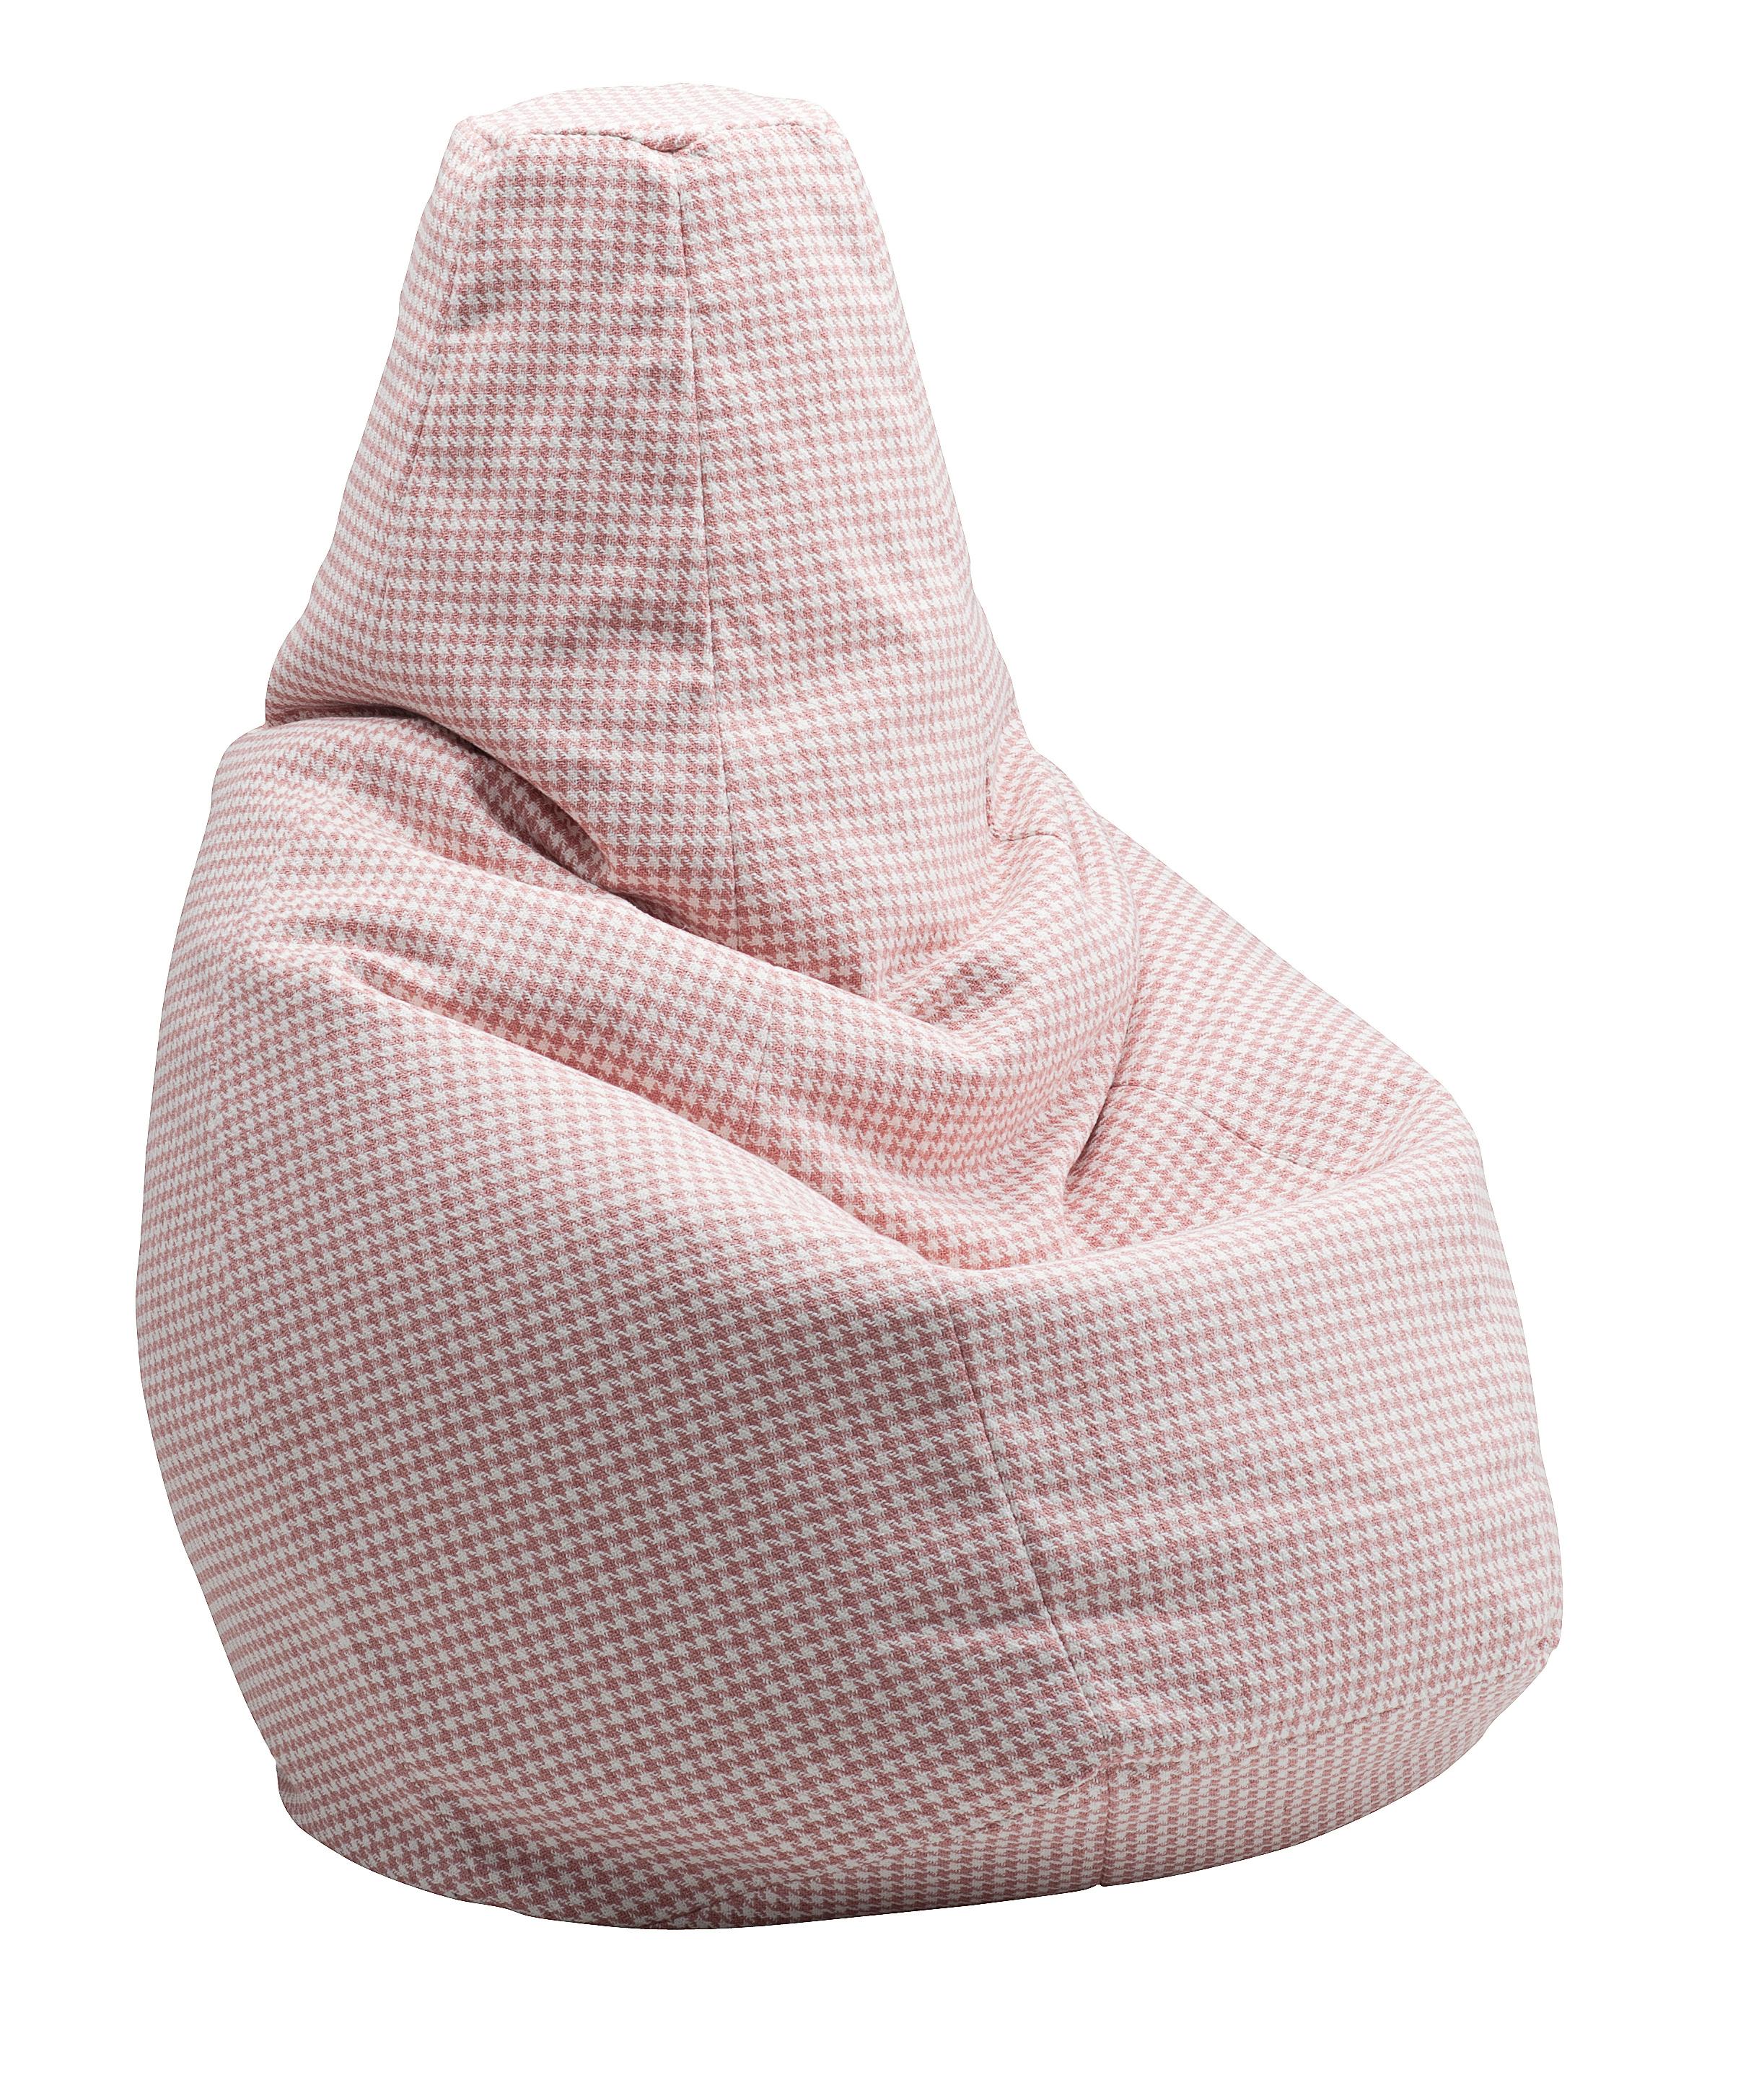 Contemporary Customizable Zanotta Sacco Easy Chair by Gatti, Paolini, Teodoro For Sale